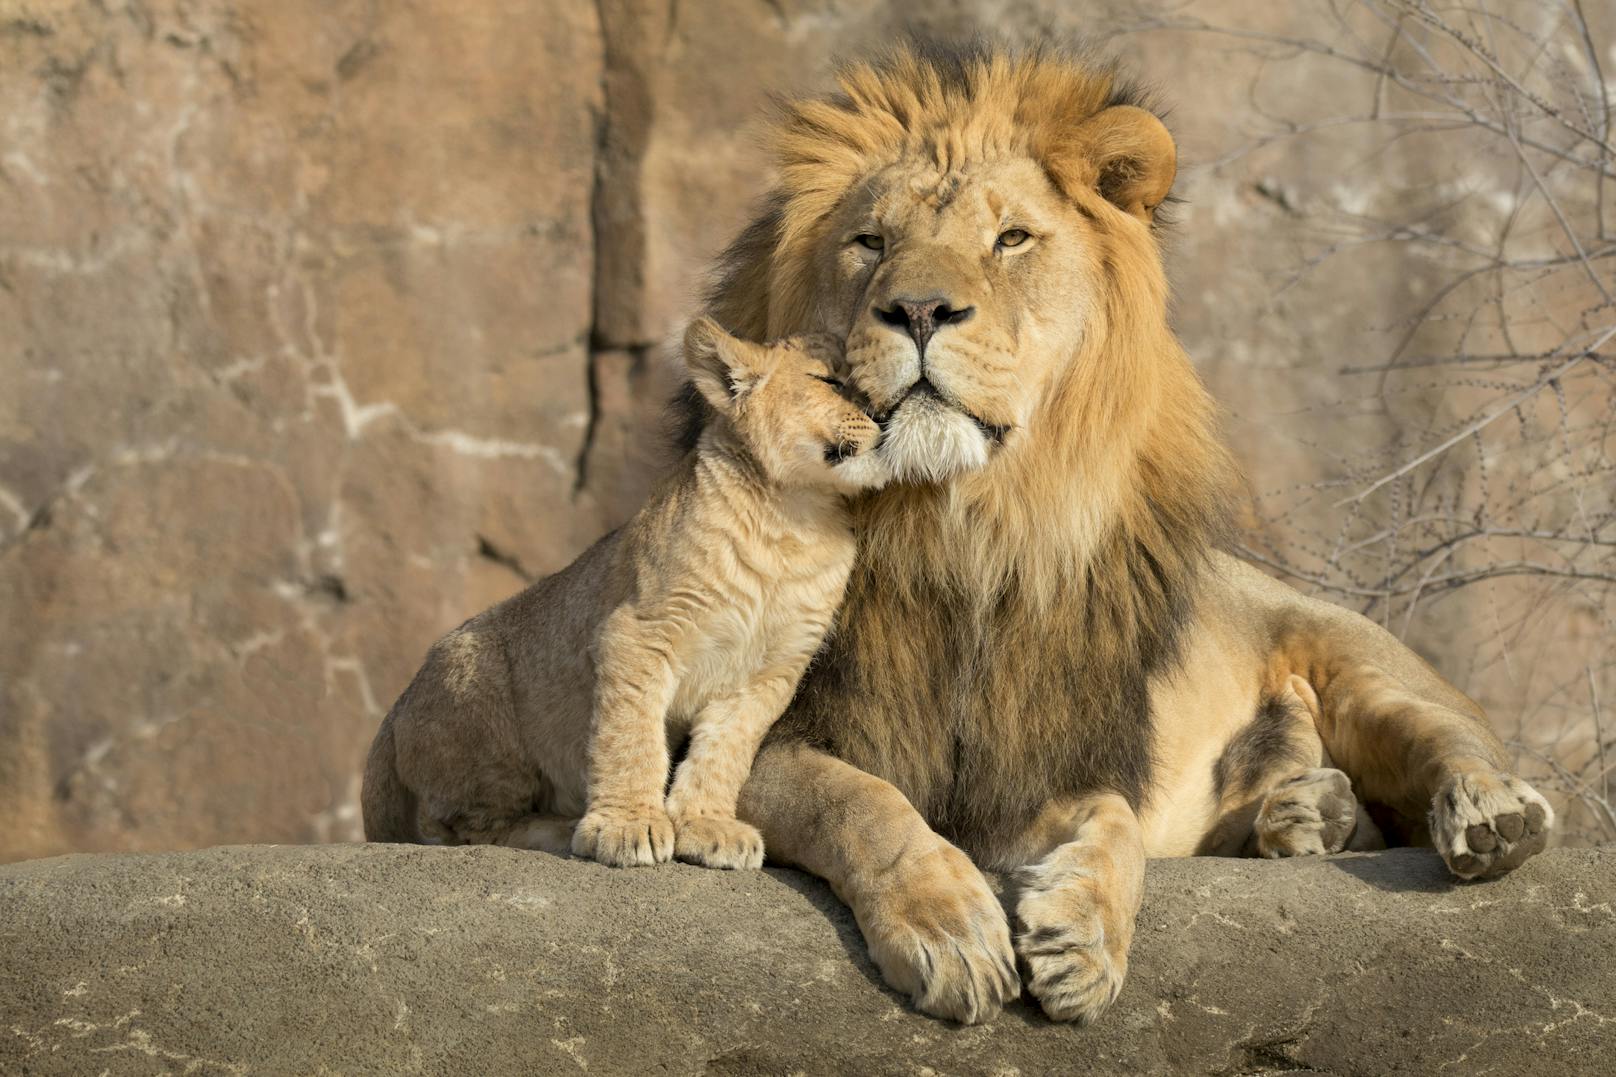 Löwen-Männchen hingegen haben eine zweifelhafte Vaterrolle. Sie sind bekannt dafür, fremde Löwenjunge zu töten, damit die Löwin schneller bereit für "ihren" Nachwuchs ist. Was brutal klingt, macht aus Sicht der Löwen, die in einer kargen Umgebung überleben müssen, Sinn.